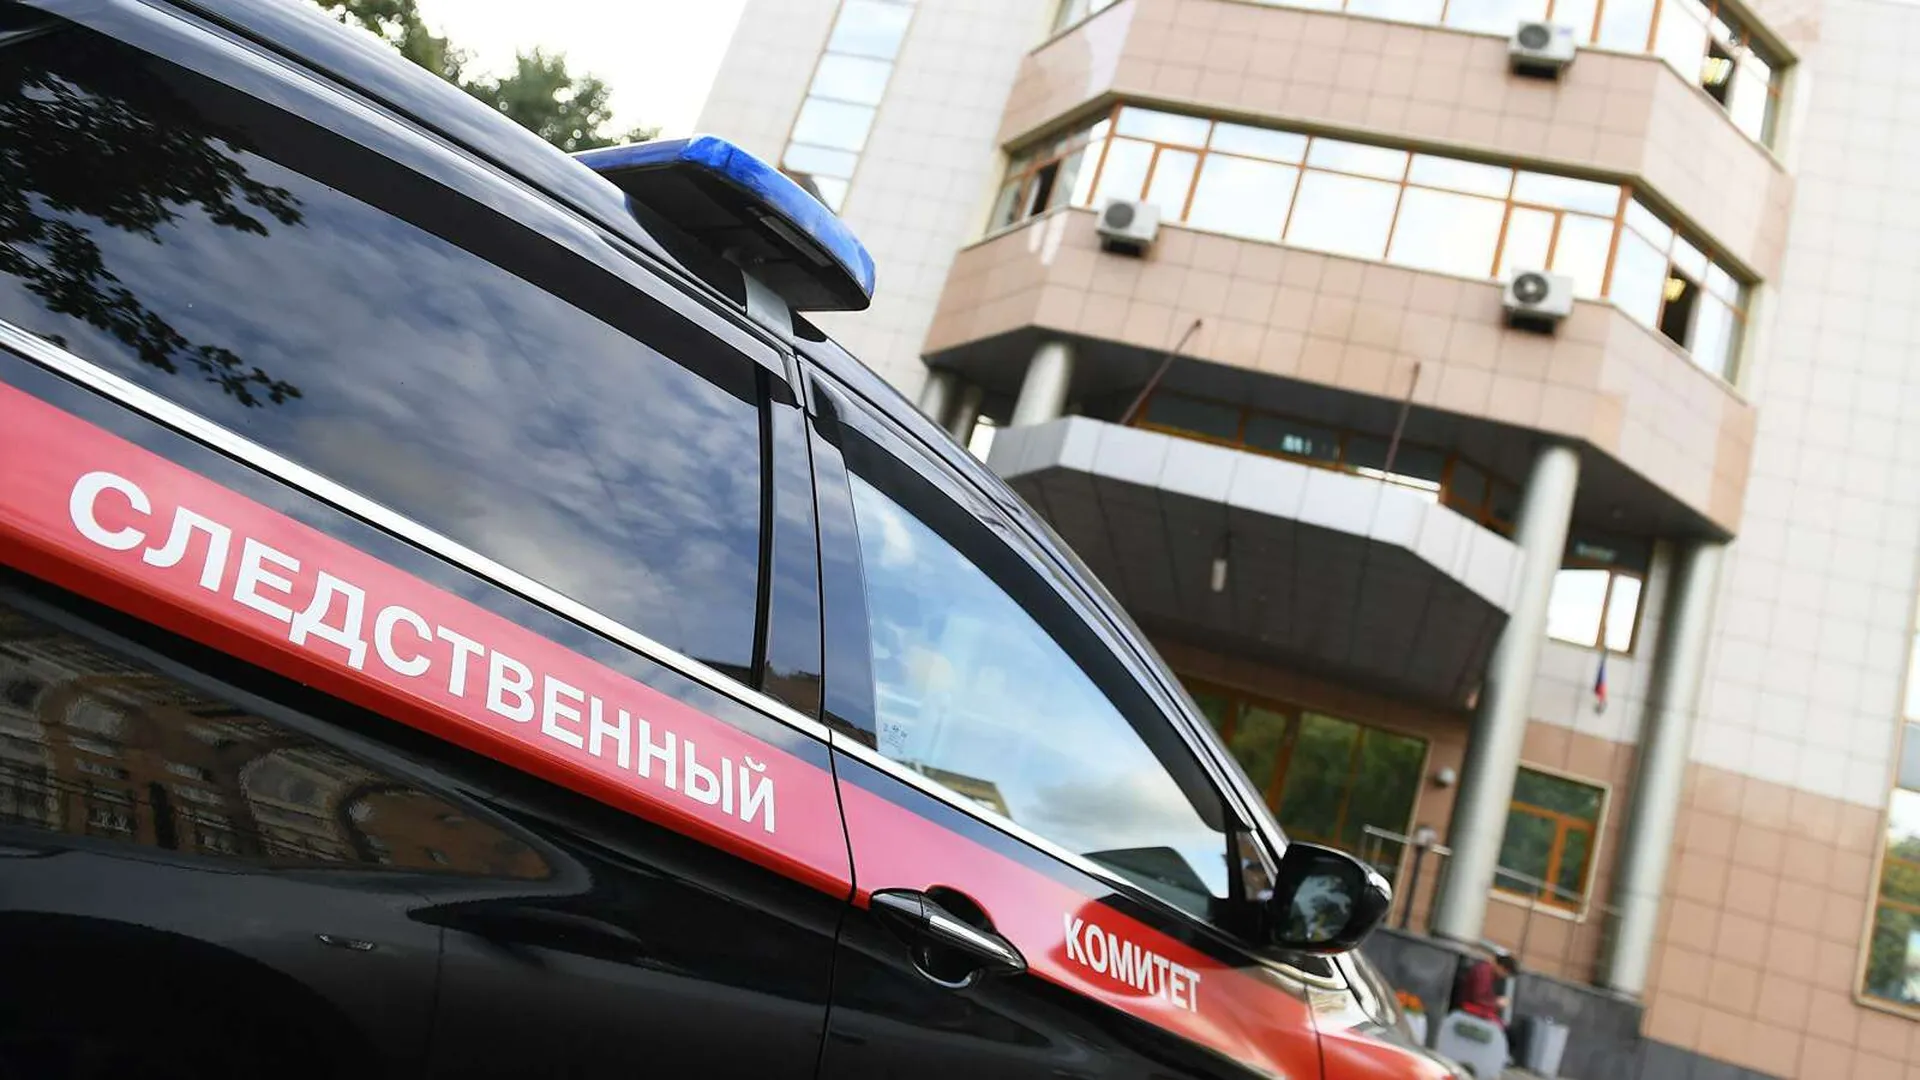 Помощника экс-схиигумена Сергия Всеволода Могучева задержали за экстремизм — источник